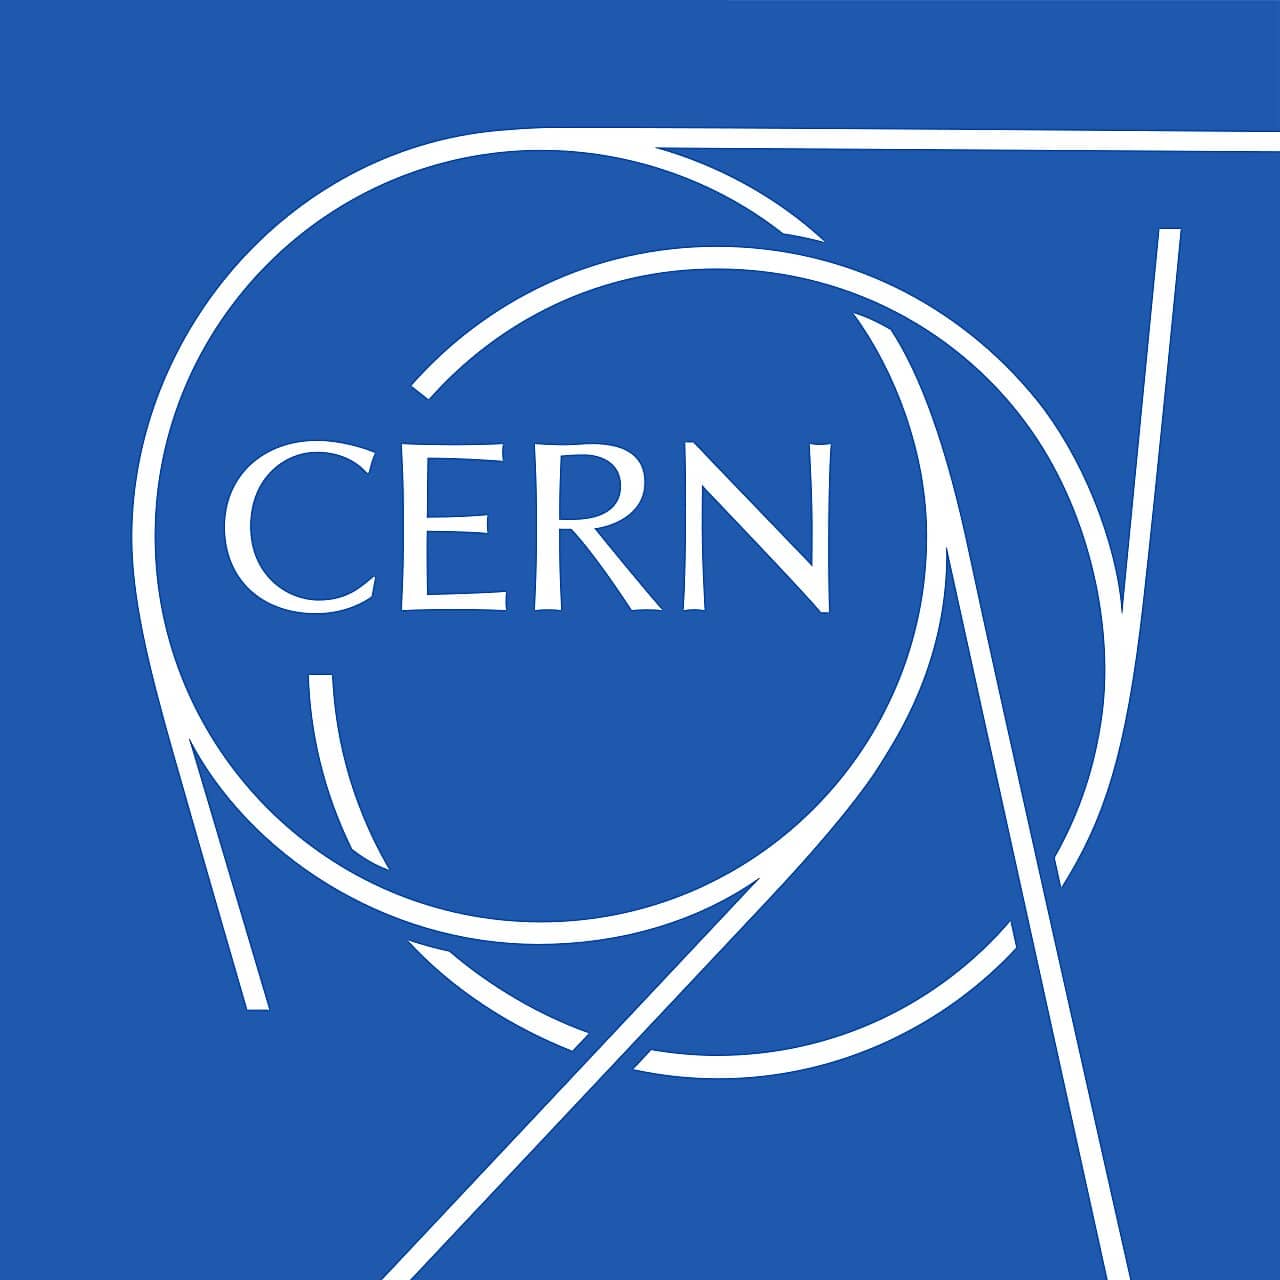 Il logotipo dell'Organizzazione Europea per la Ricerca Nucleare